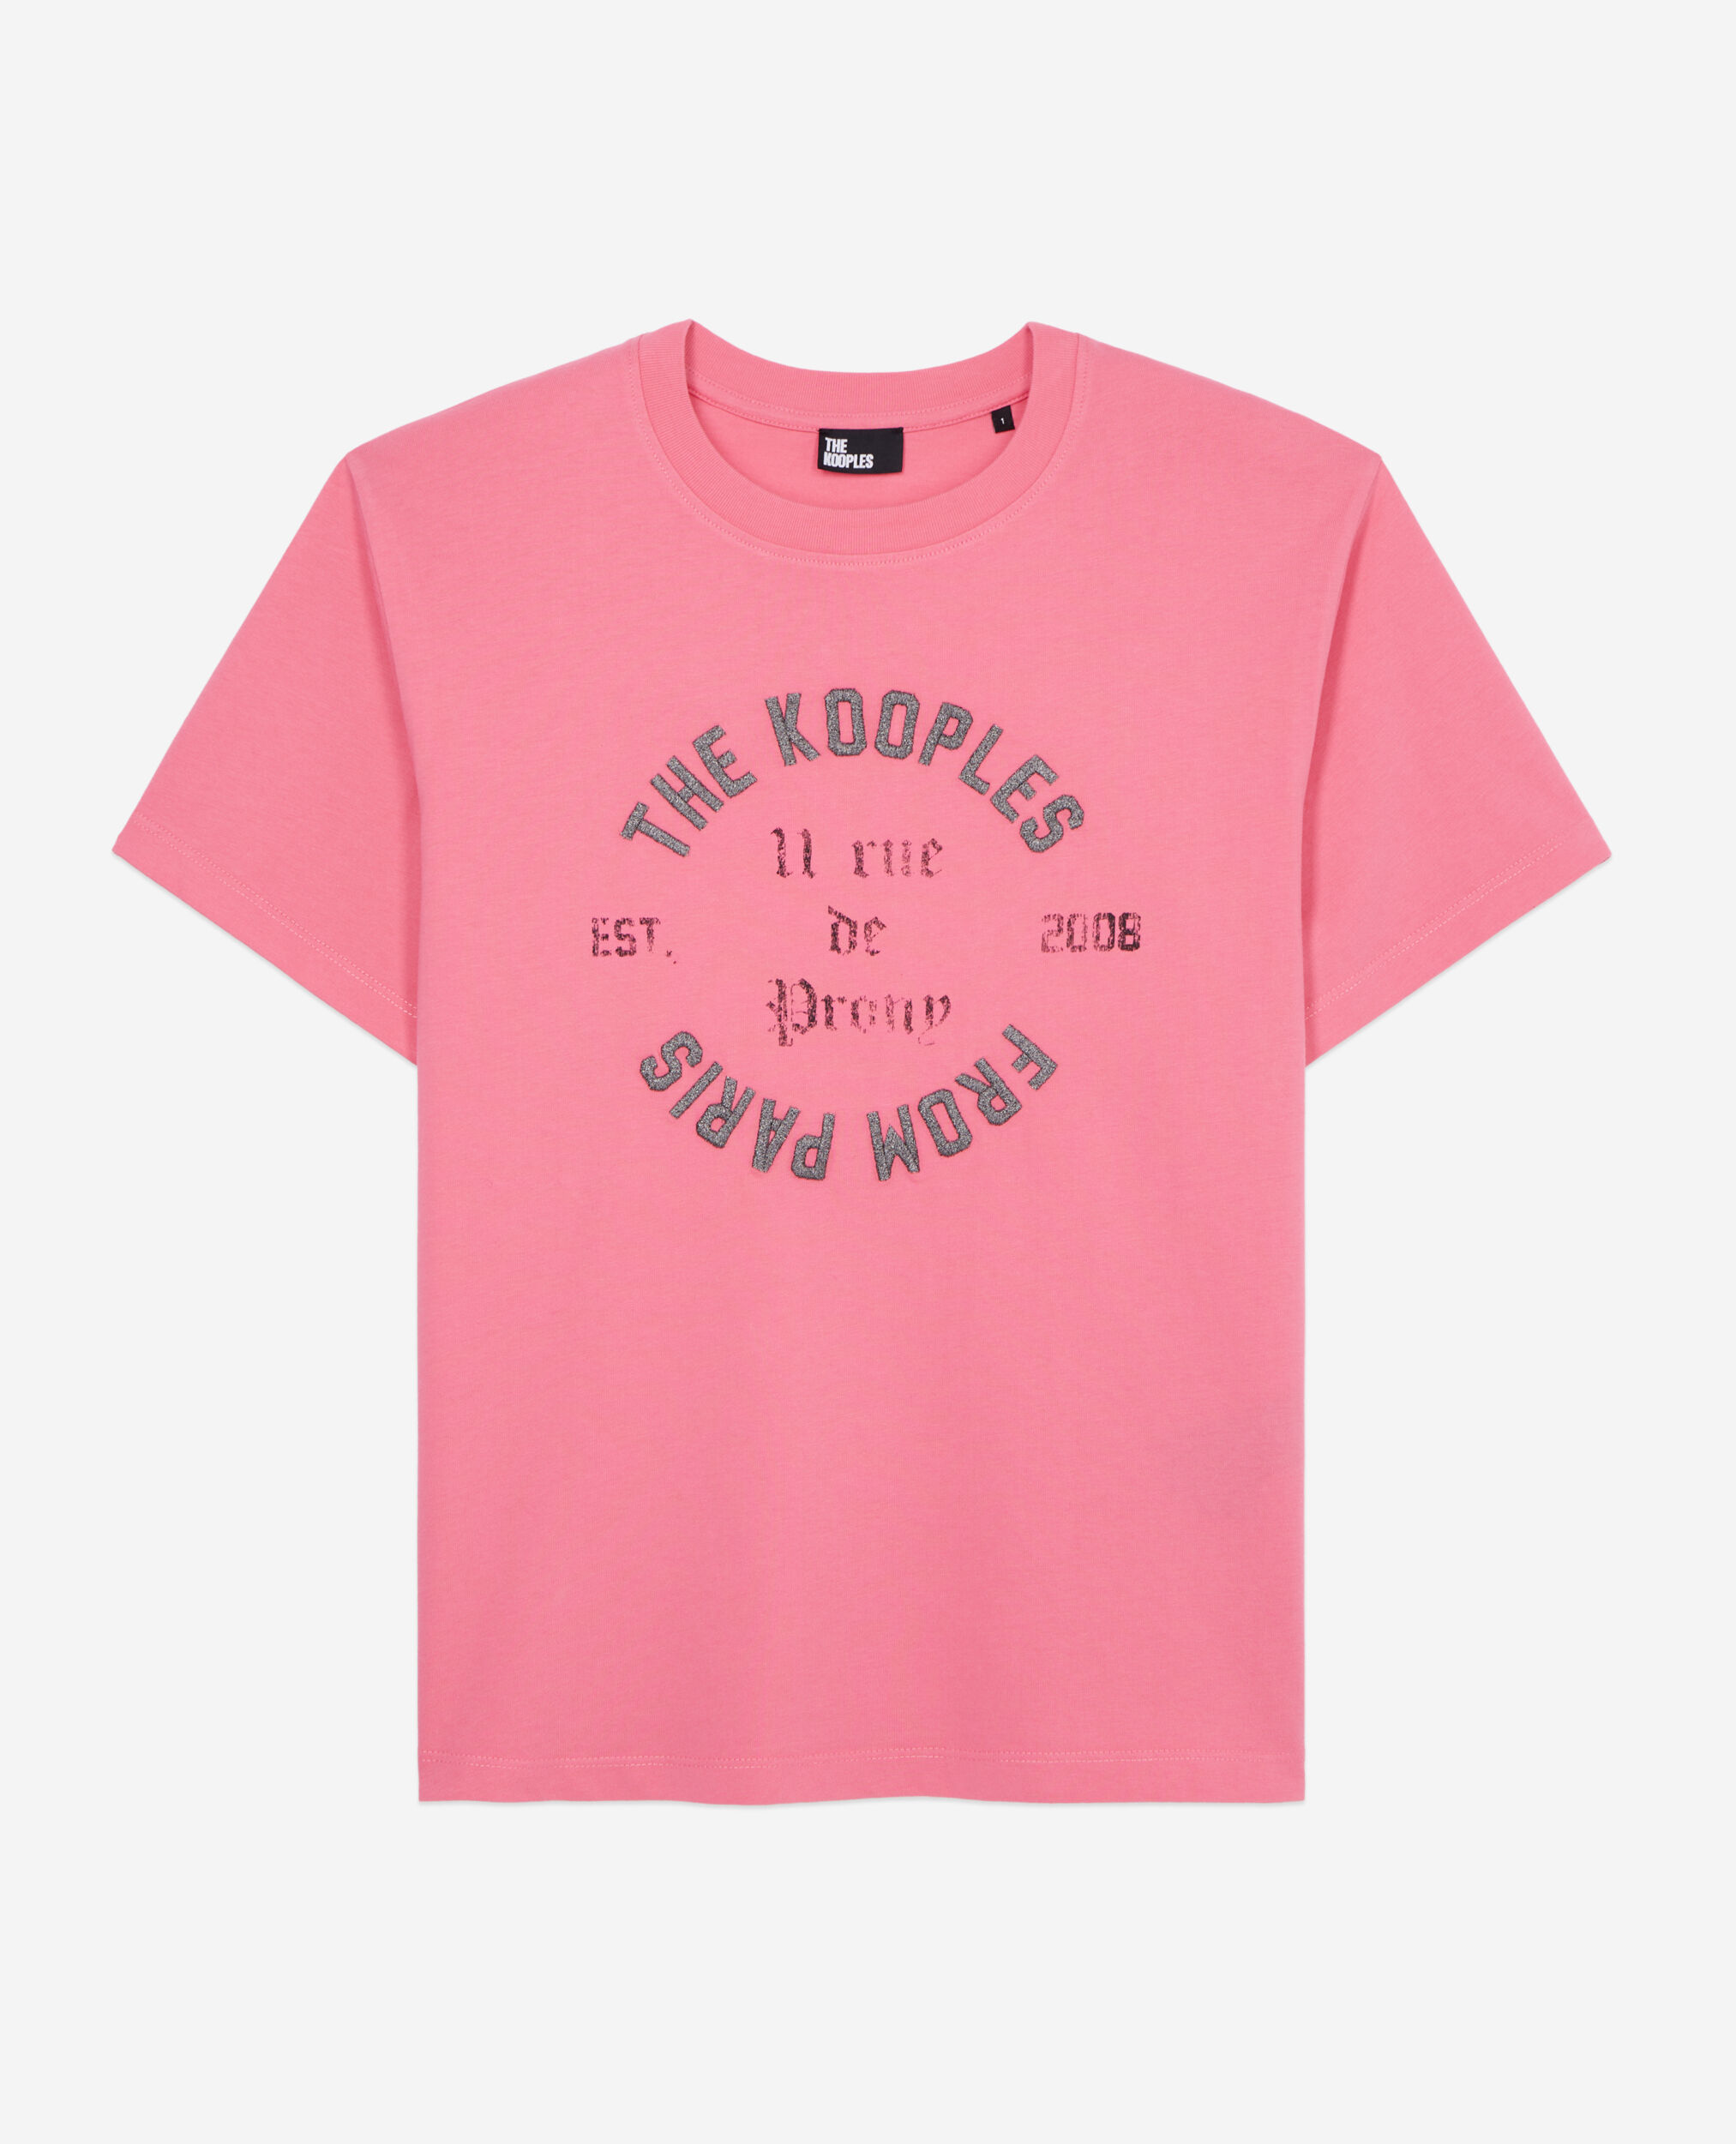 Rosa T-Shirt Damen mit Siebdruck, OLD PINK, hi-res image number null